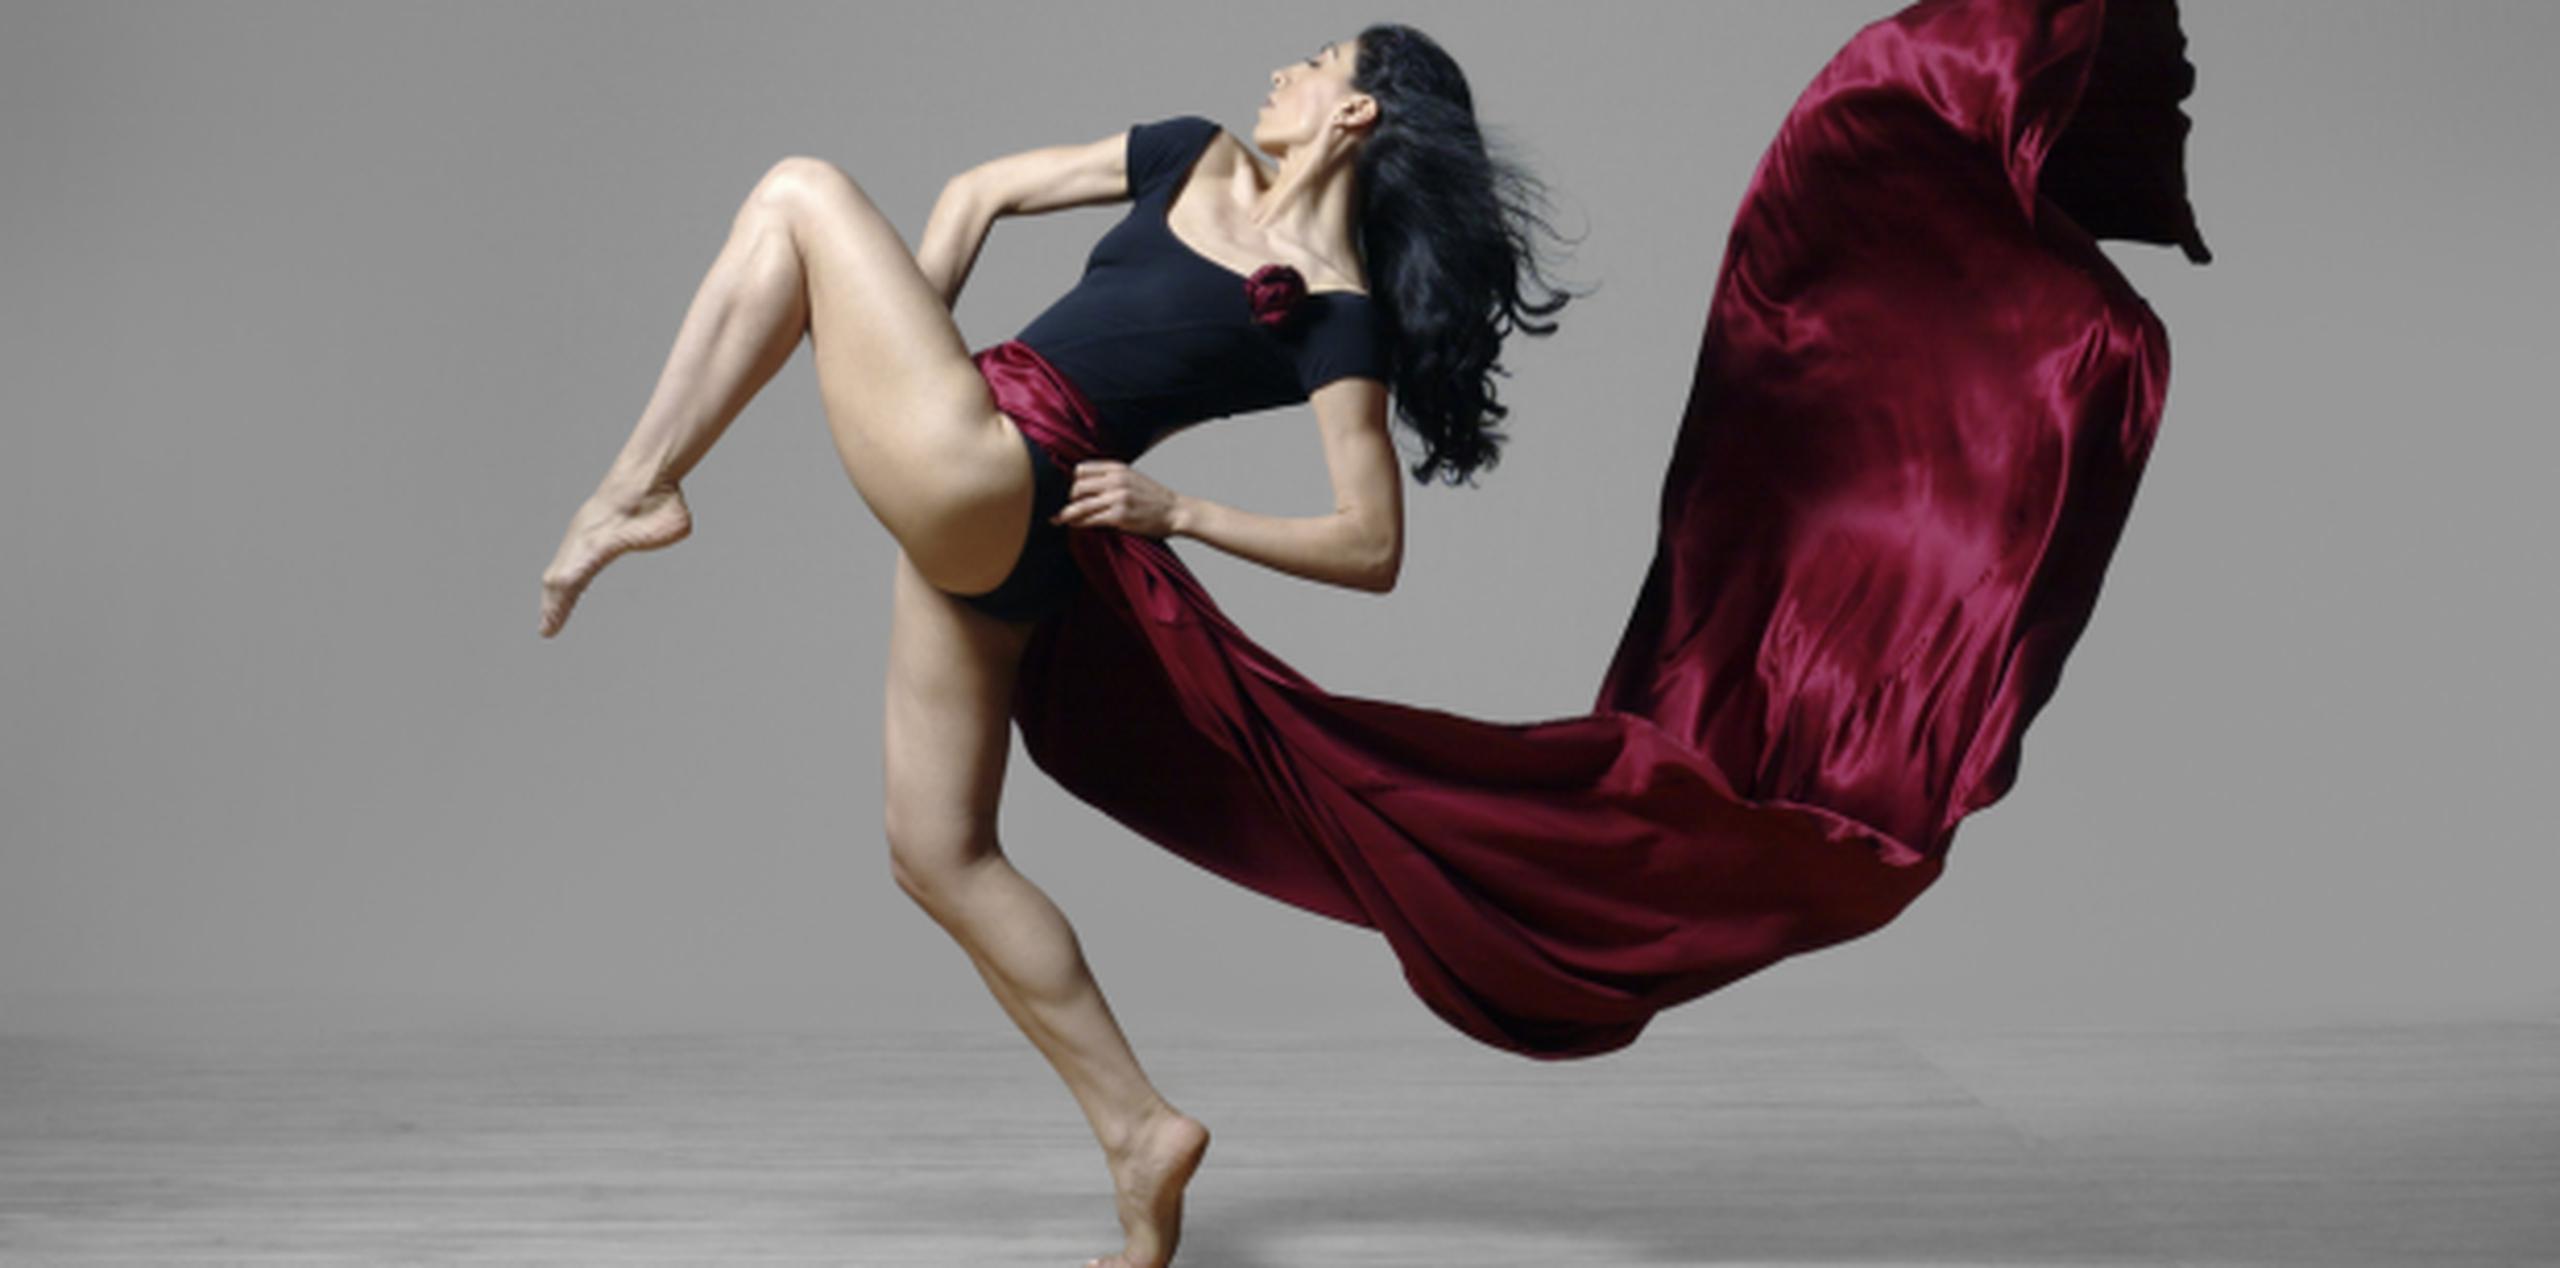 La bailarina turca Nejla Yatkin se unirá el Festival Internacional del Baile 2014 que tendrá como sedes distintos pueblos de la Isla. (Suministrada)